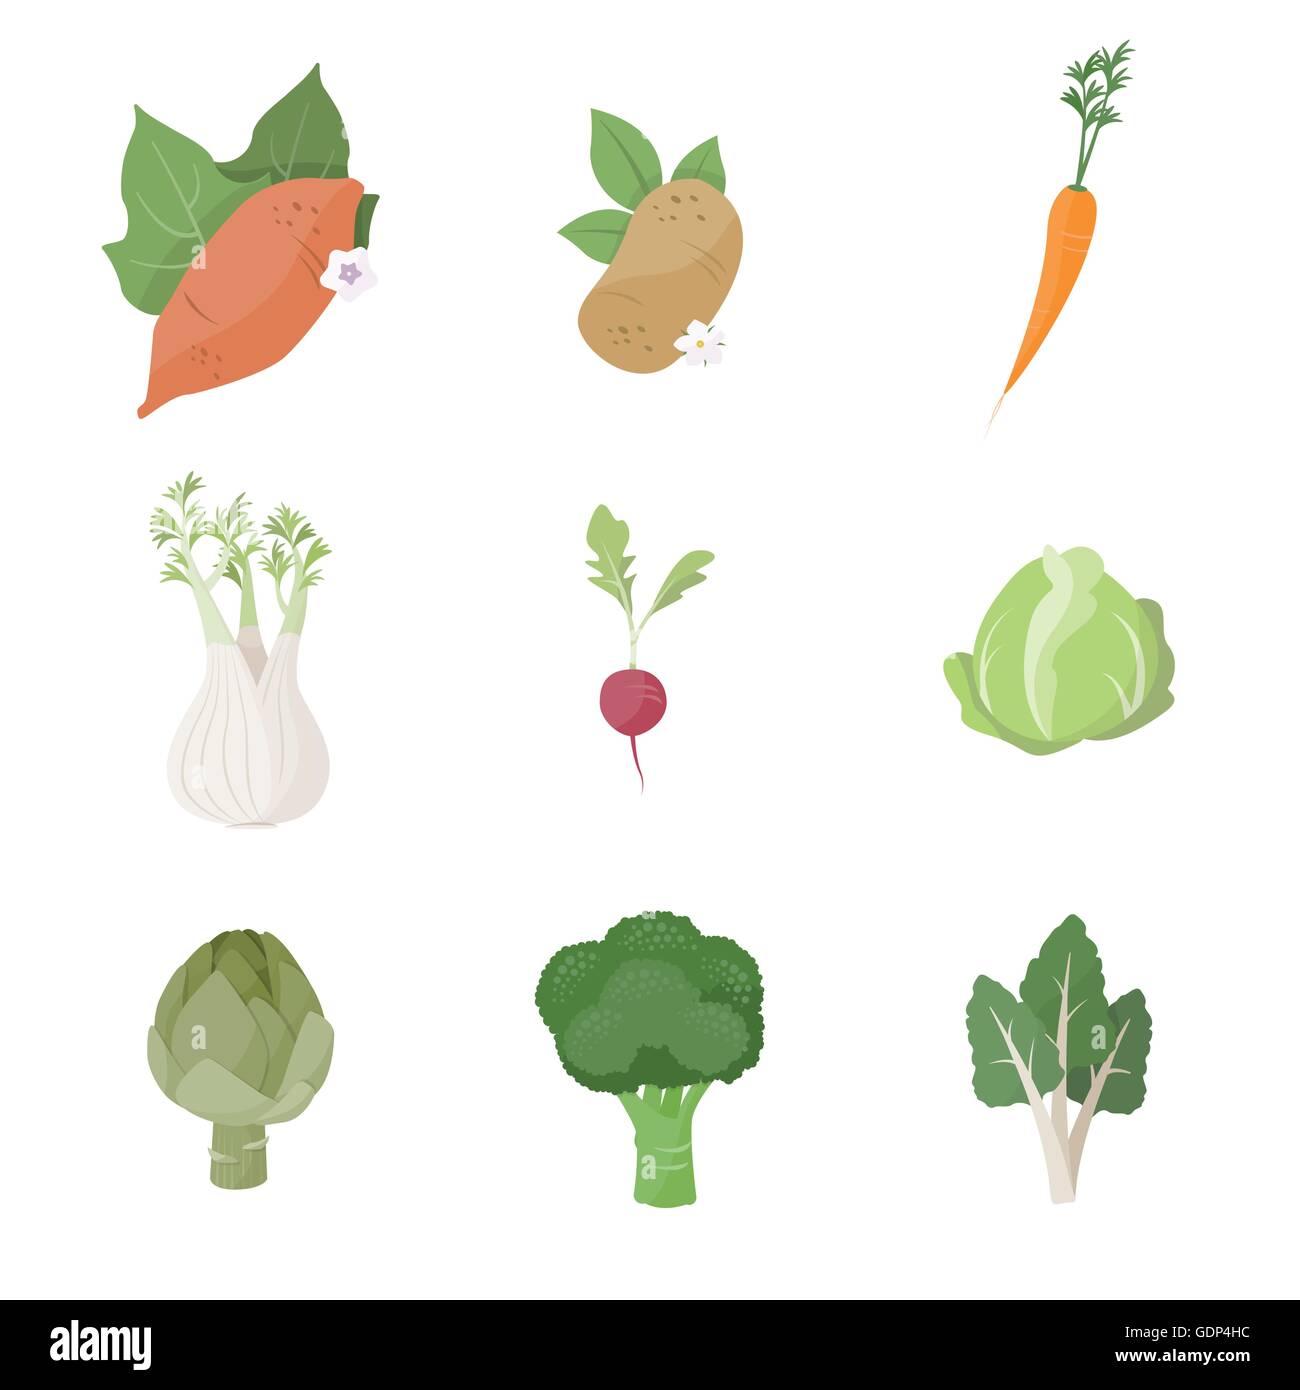 Les légumes frais du jardin situé sur fond blanc, notamment la patate douce, pomme de terre, carotte, fenouil, radis, choux, artichauts, bro Illustration de Vecteur